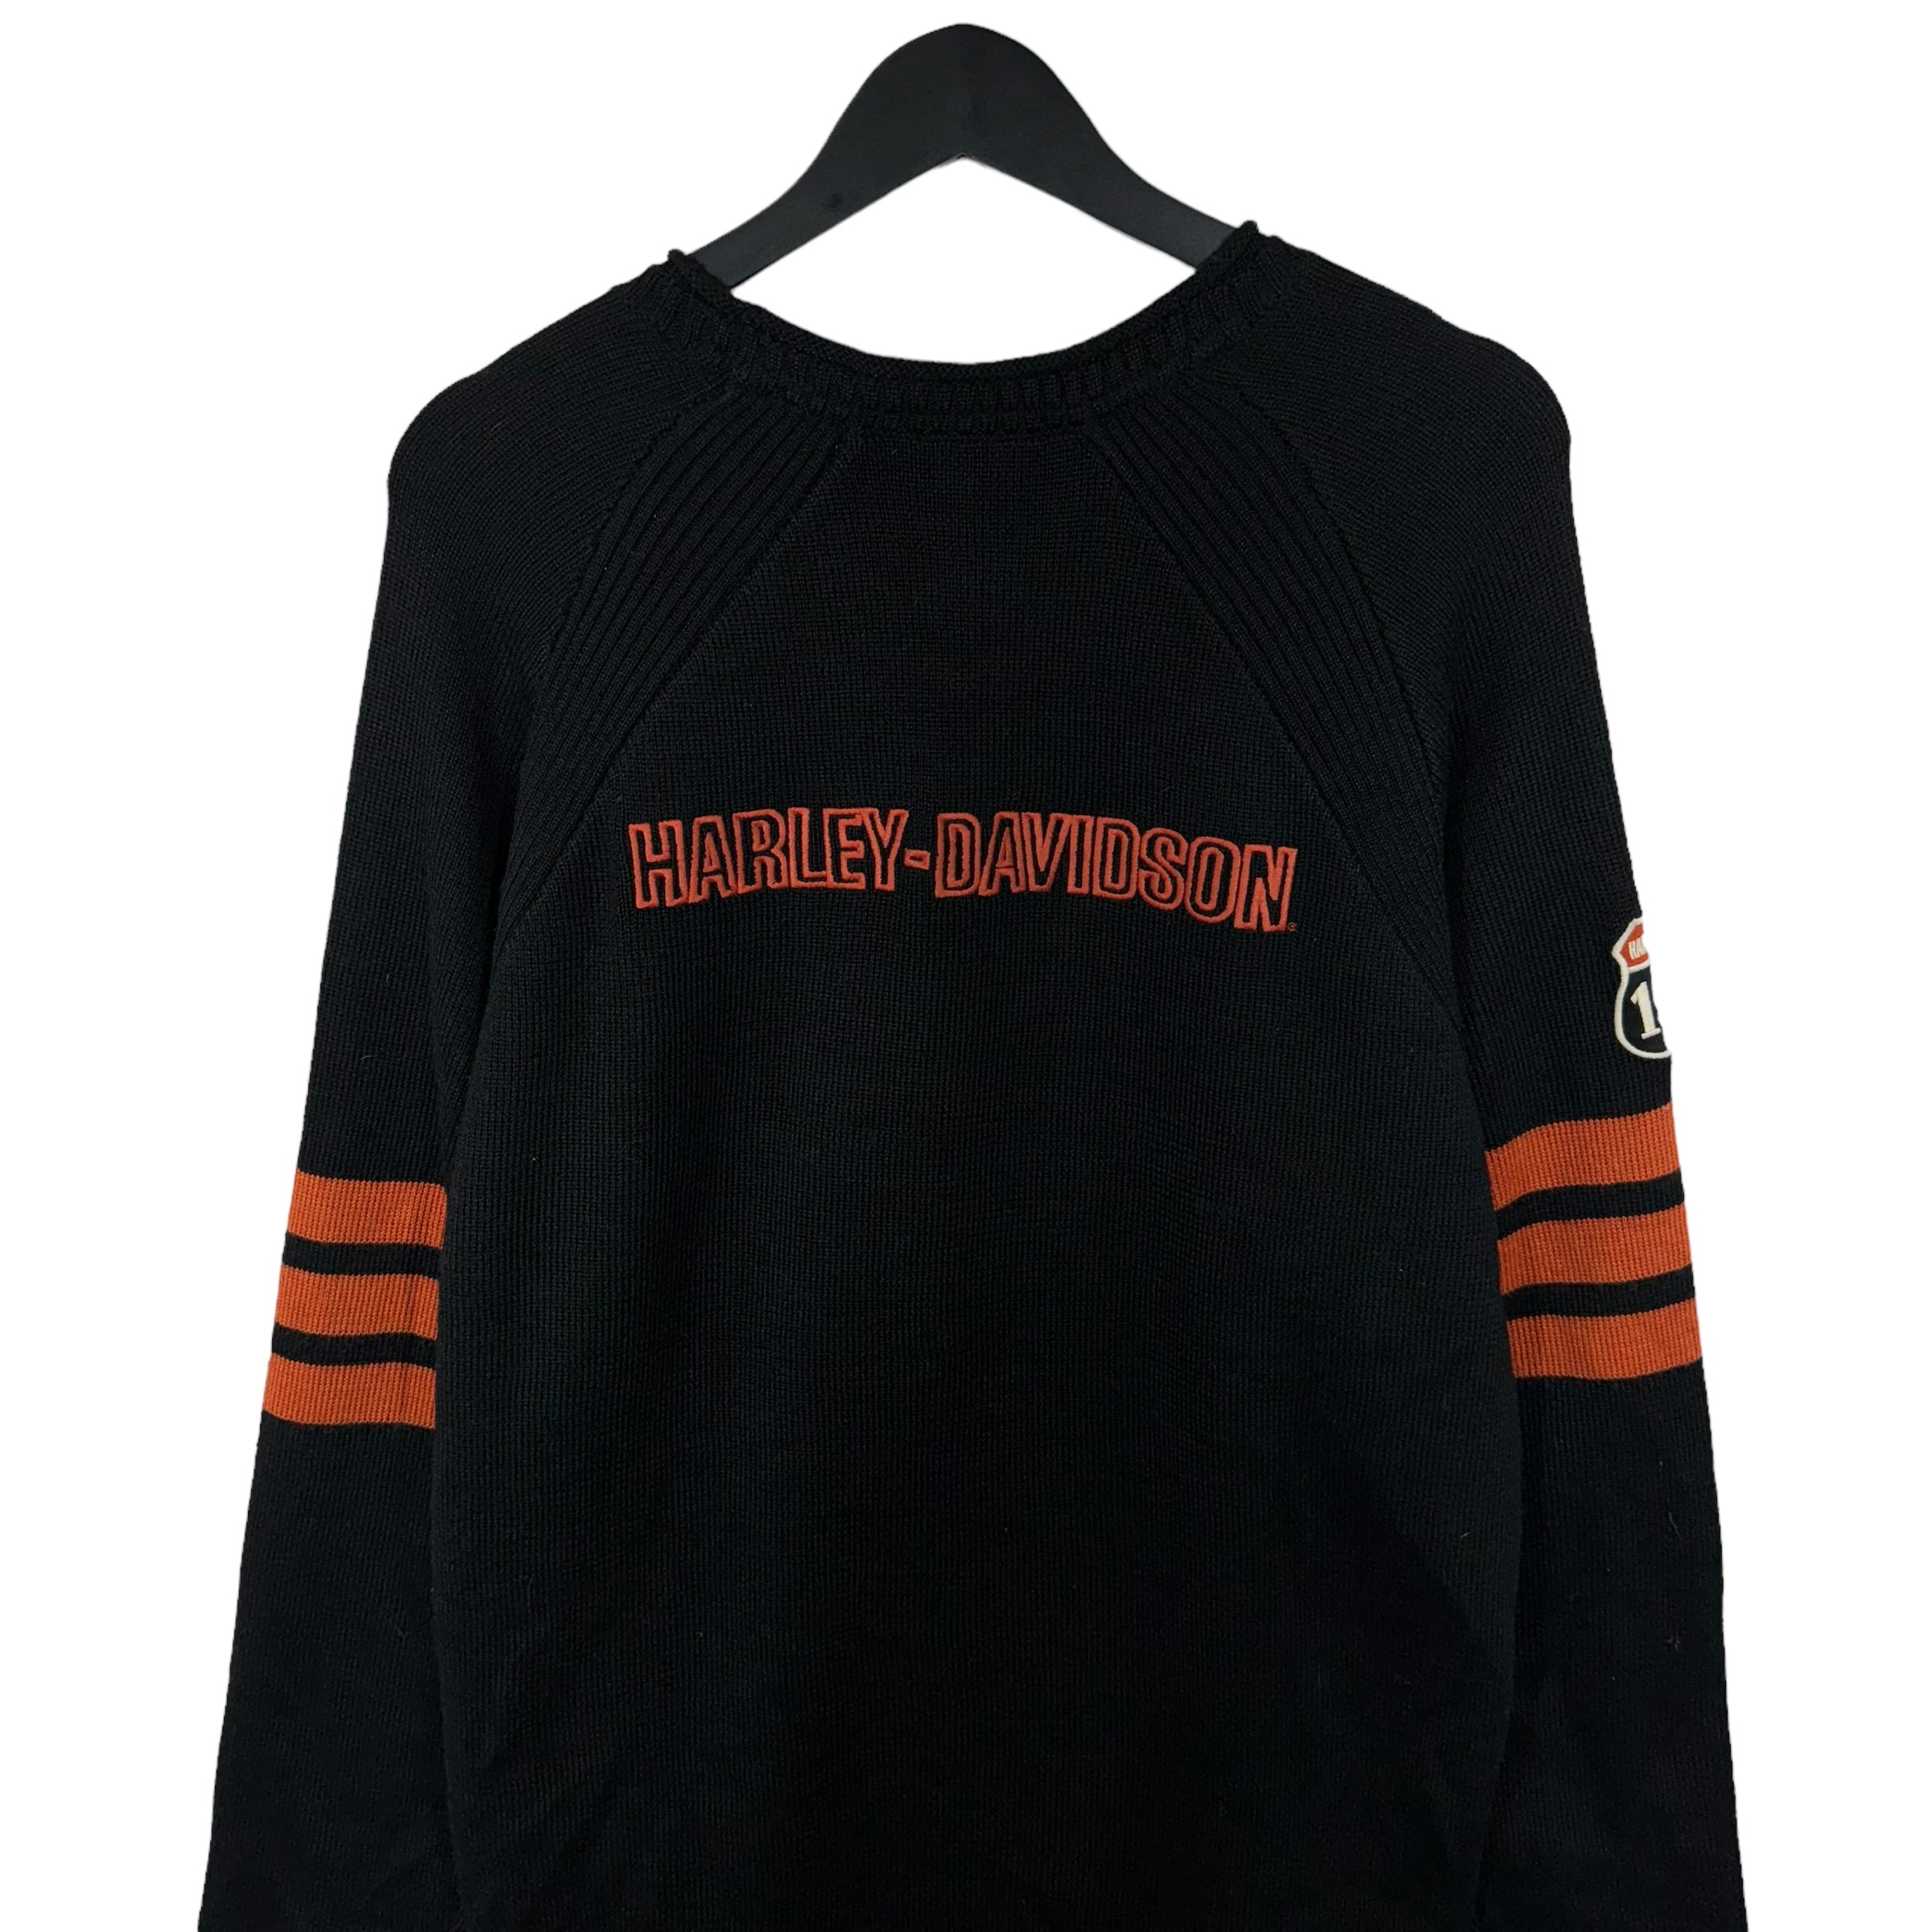 Vintage Harley Davidson Sweater